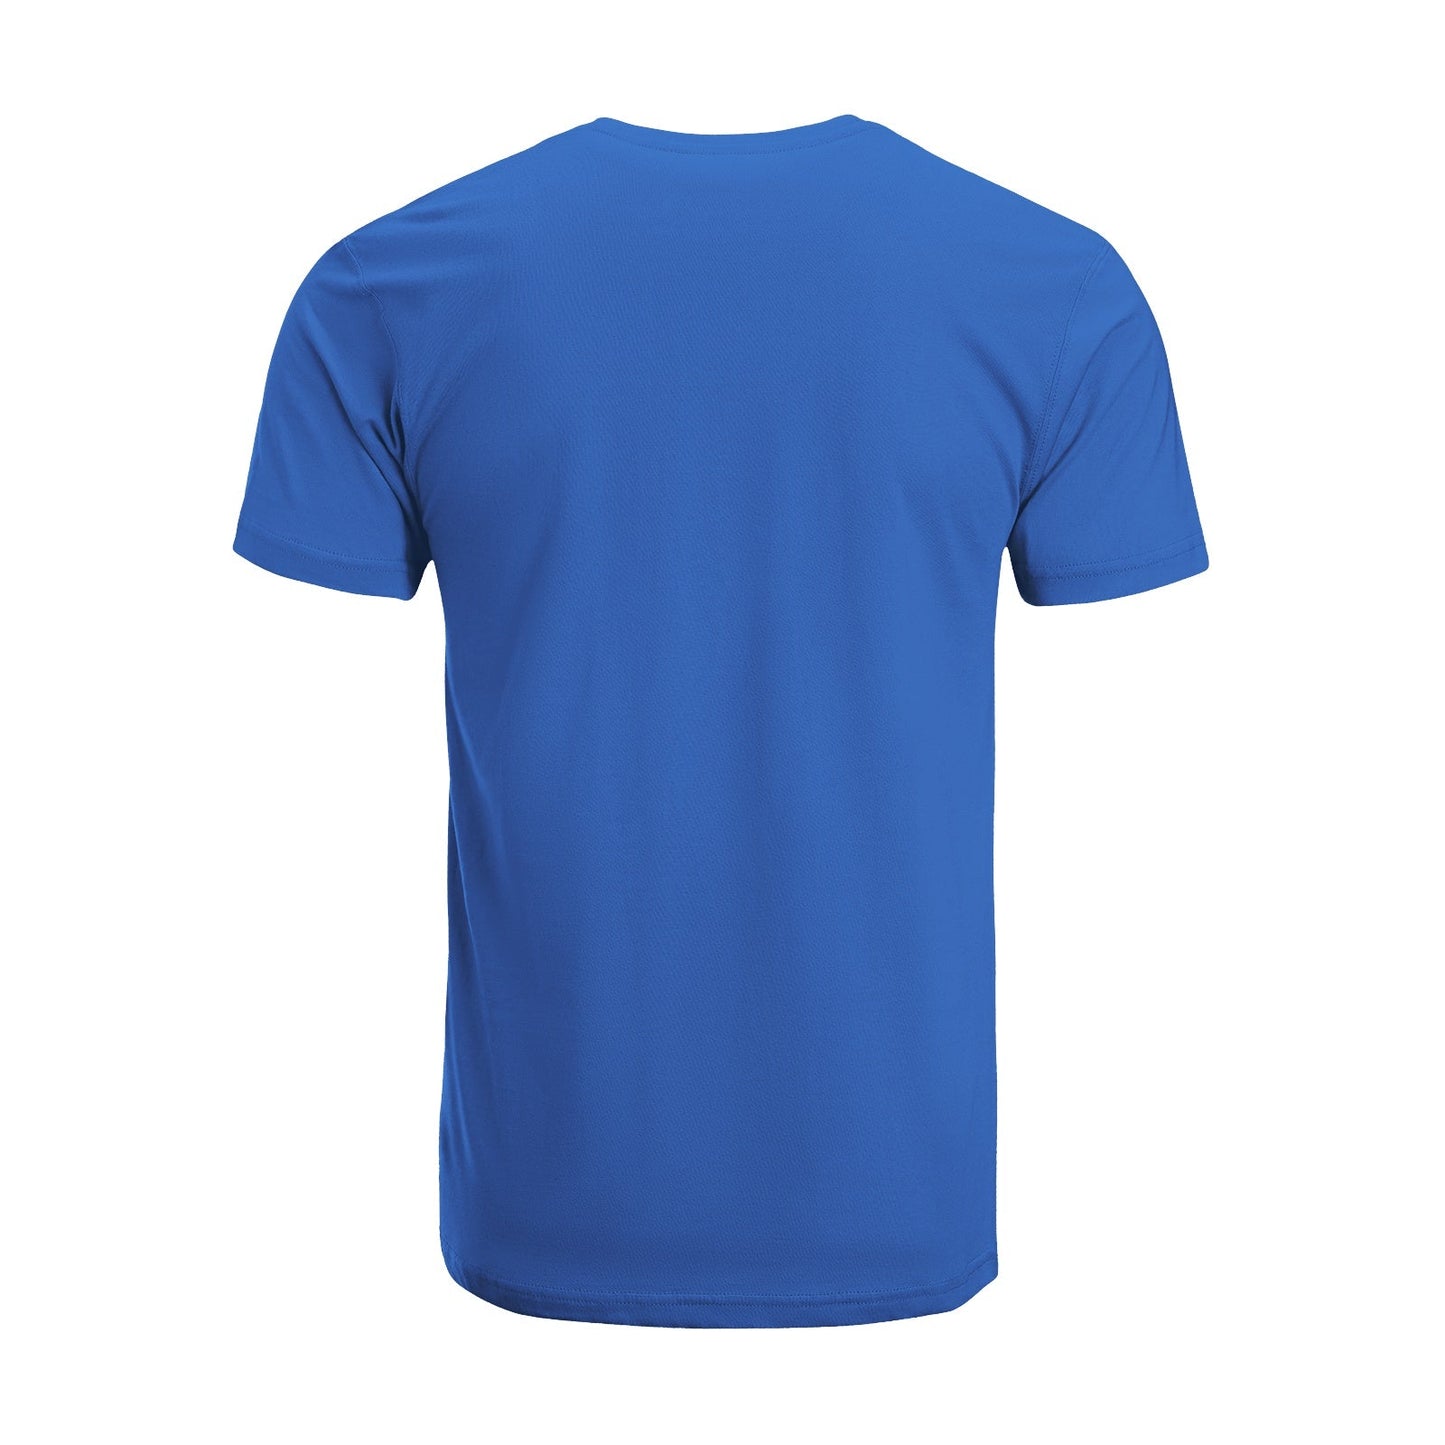 Unisex Short Sleeve Crew Neck Cotton Jersey T-Shirt TRUCK 15